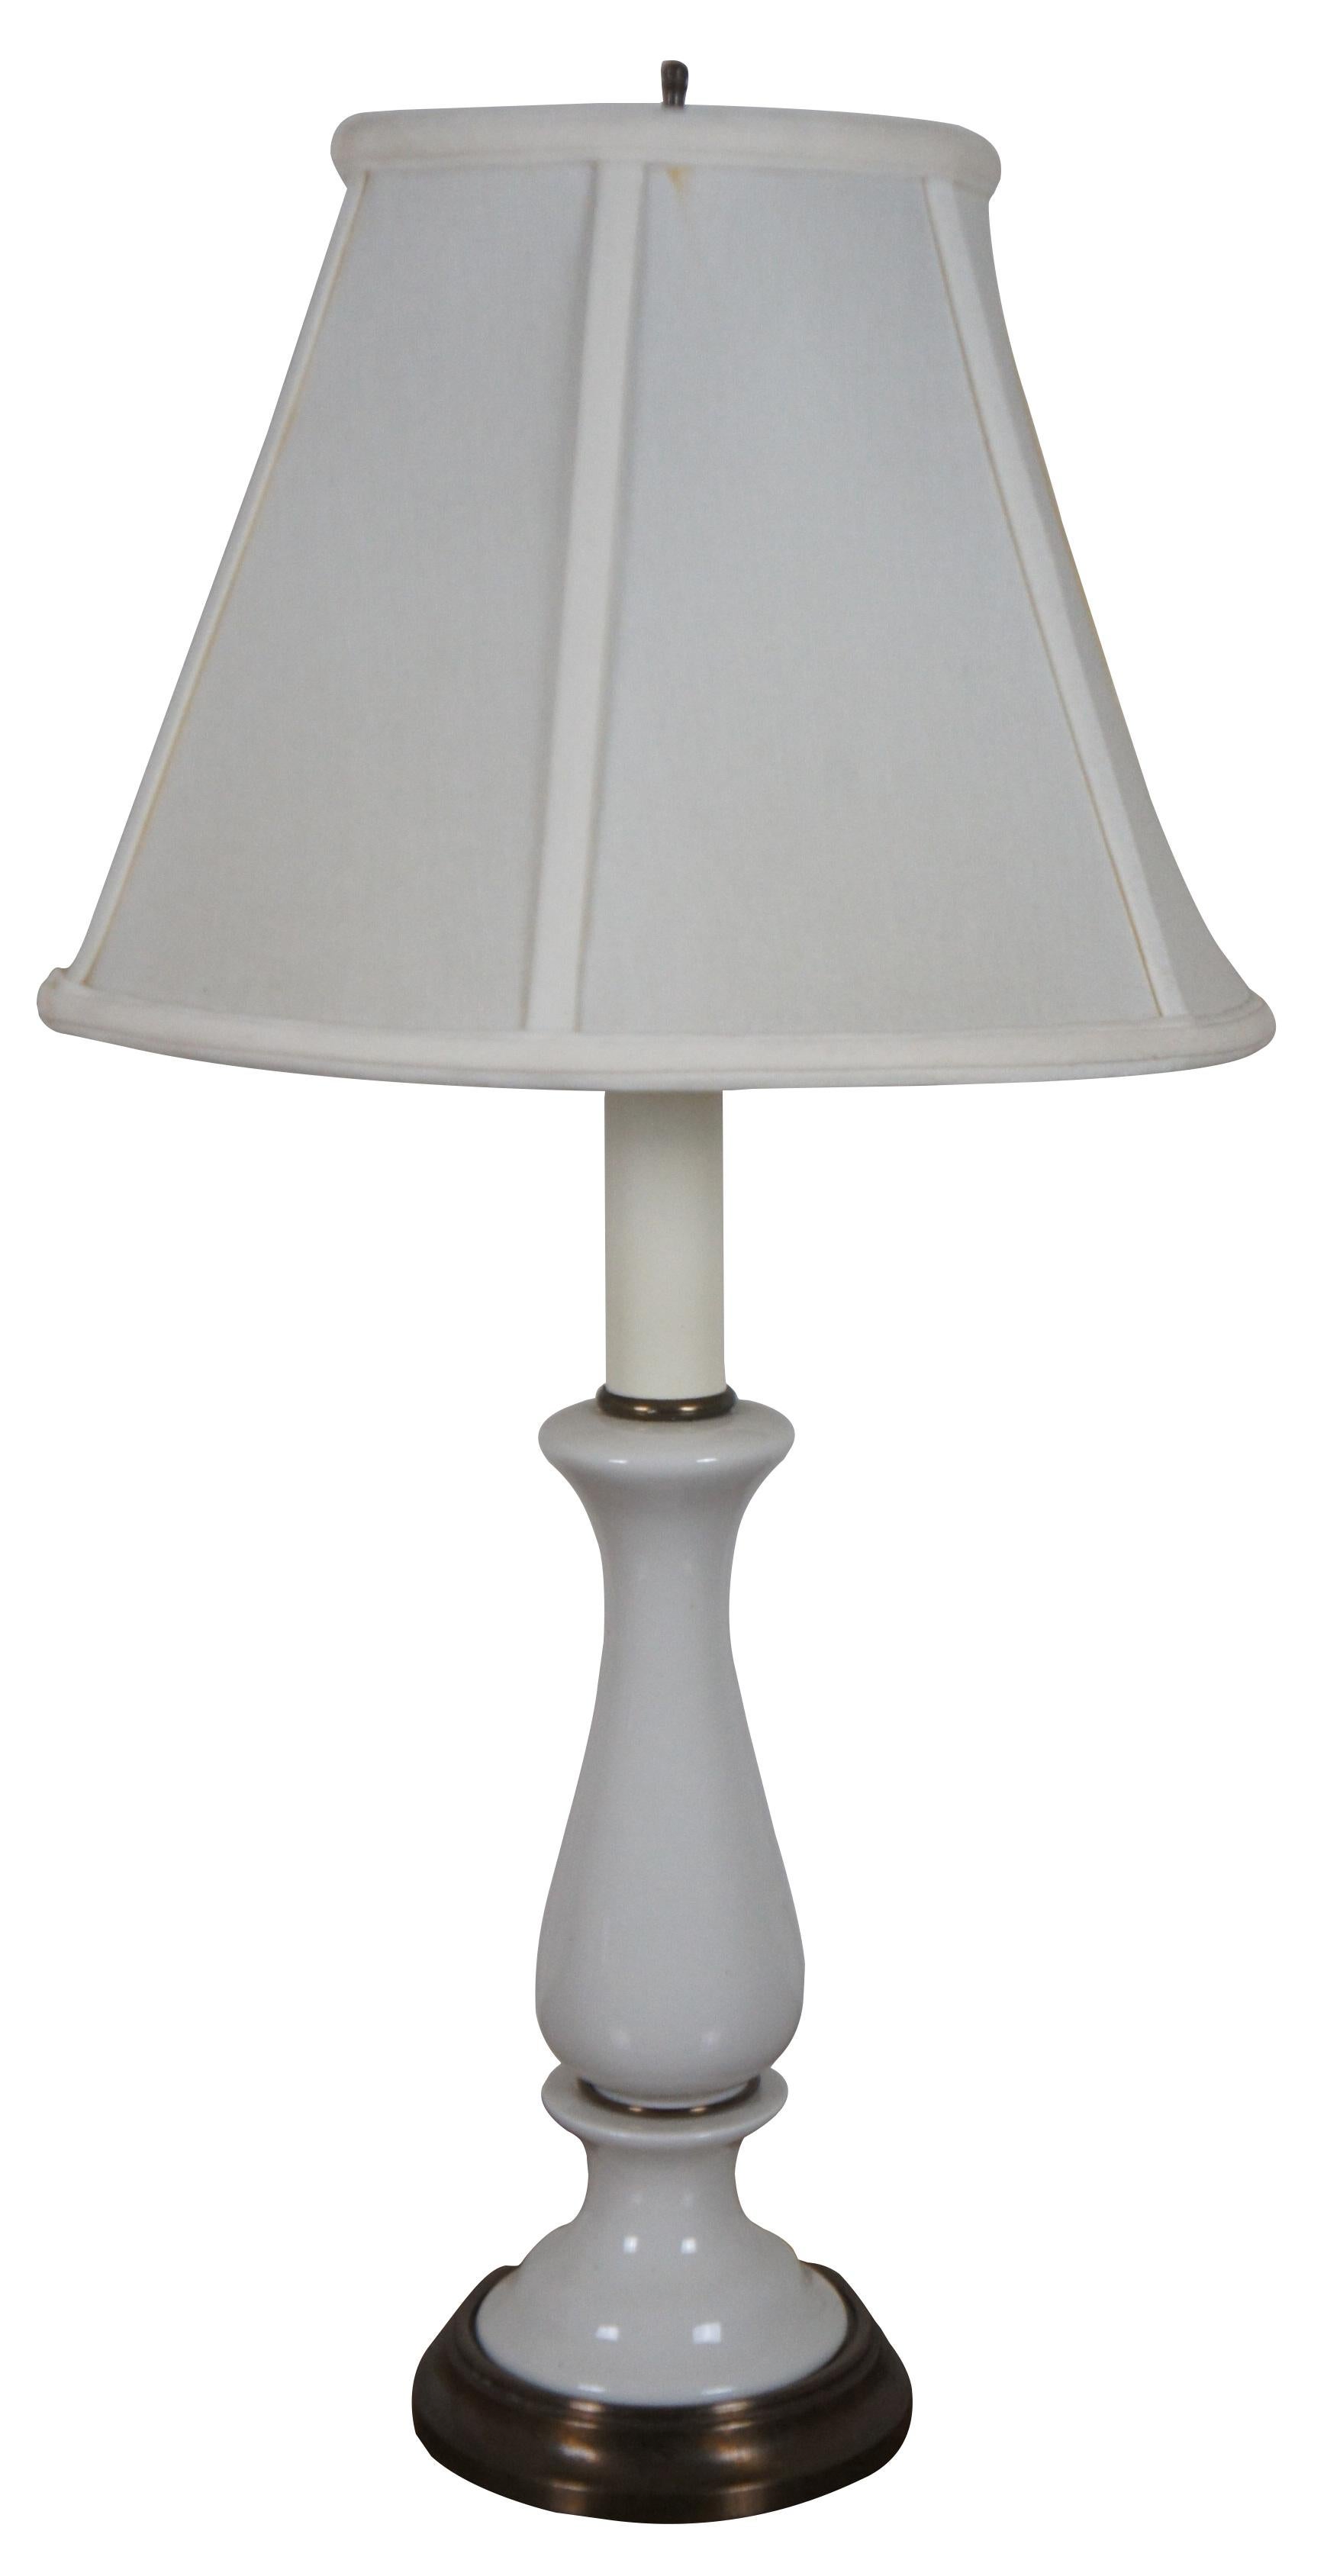 Paire de lampes de table Boudoir en porcelaine blanche Kichler du milieu du siècle dernier, avec dessus de chandeliers et abat-jour blancs.

Mesures : 5,25 x 24 / Abat-jour - 12,25 x 8,5 (diamètre x hauteur).